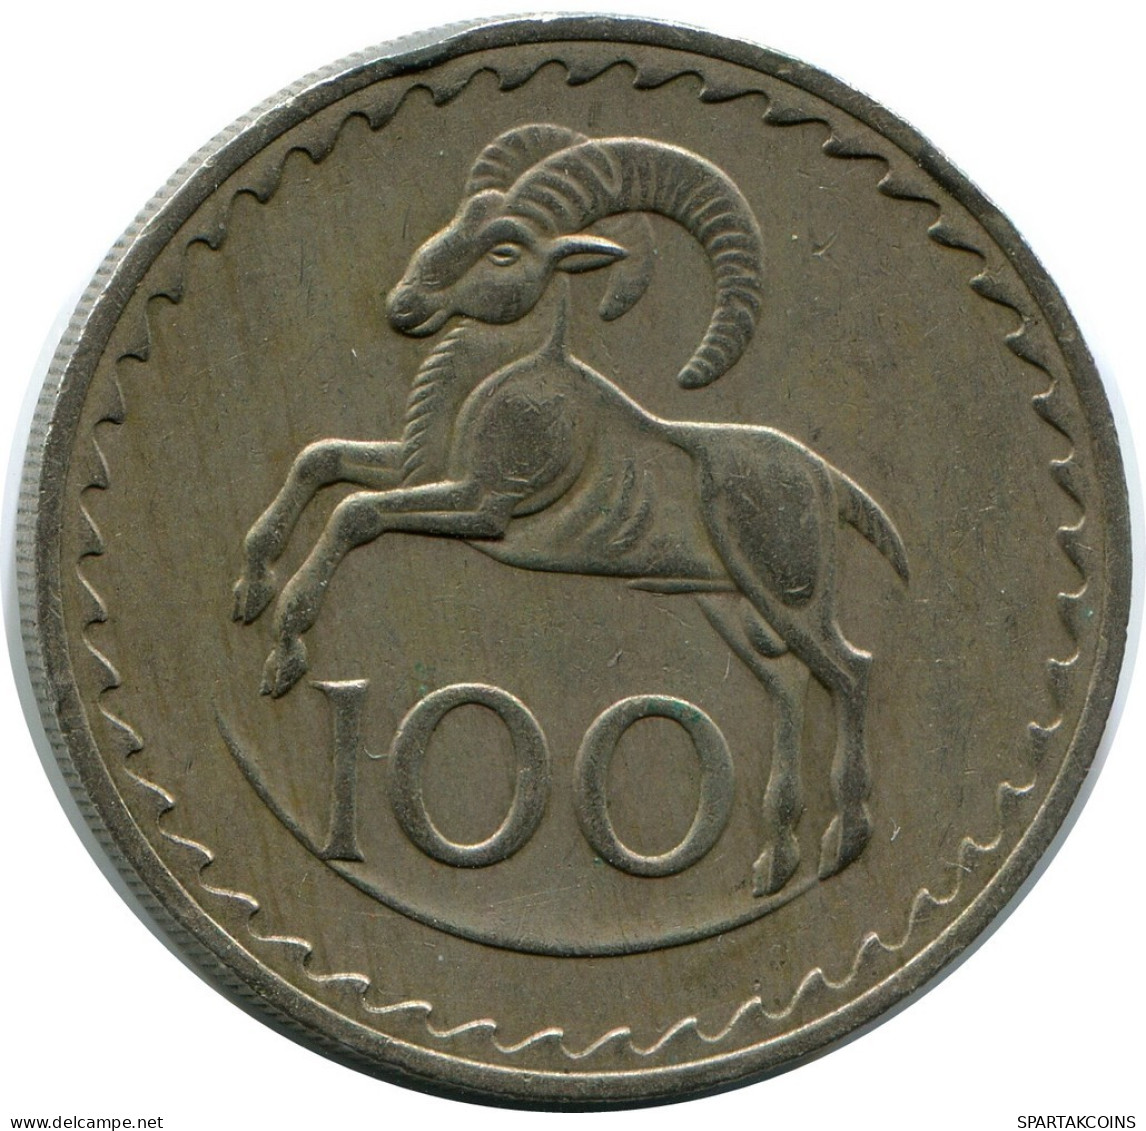 100 MILS 1974 CYPRUS Coin #AP277.U.A - Chypre